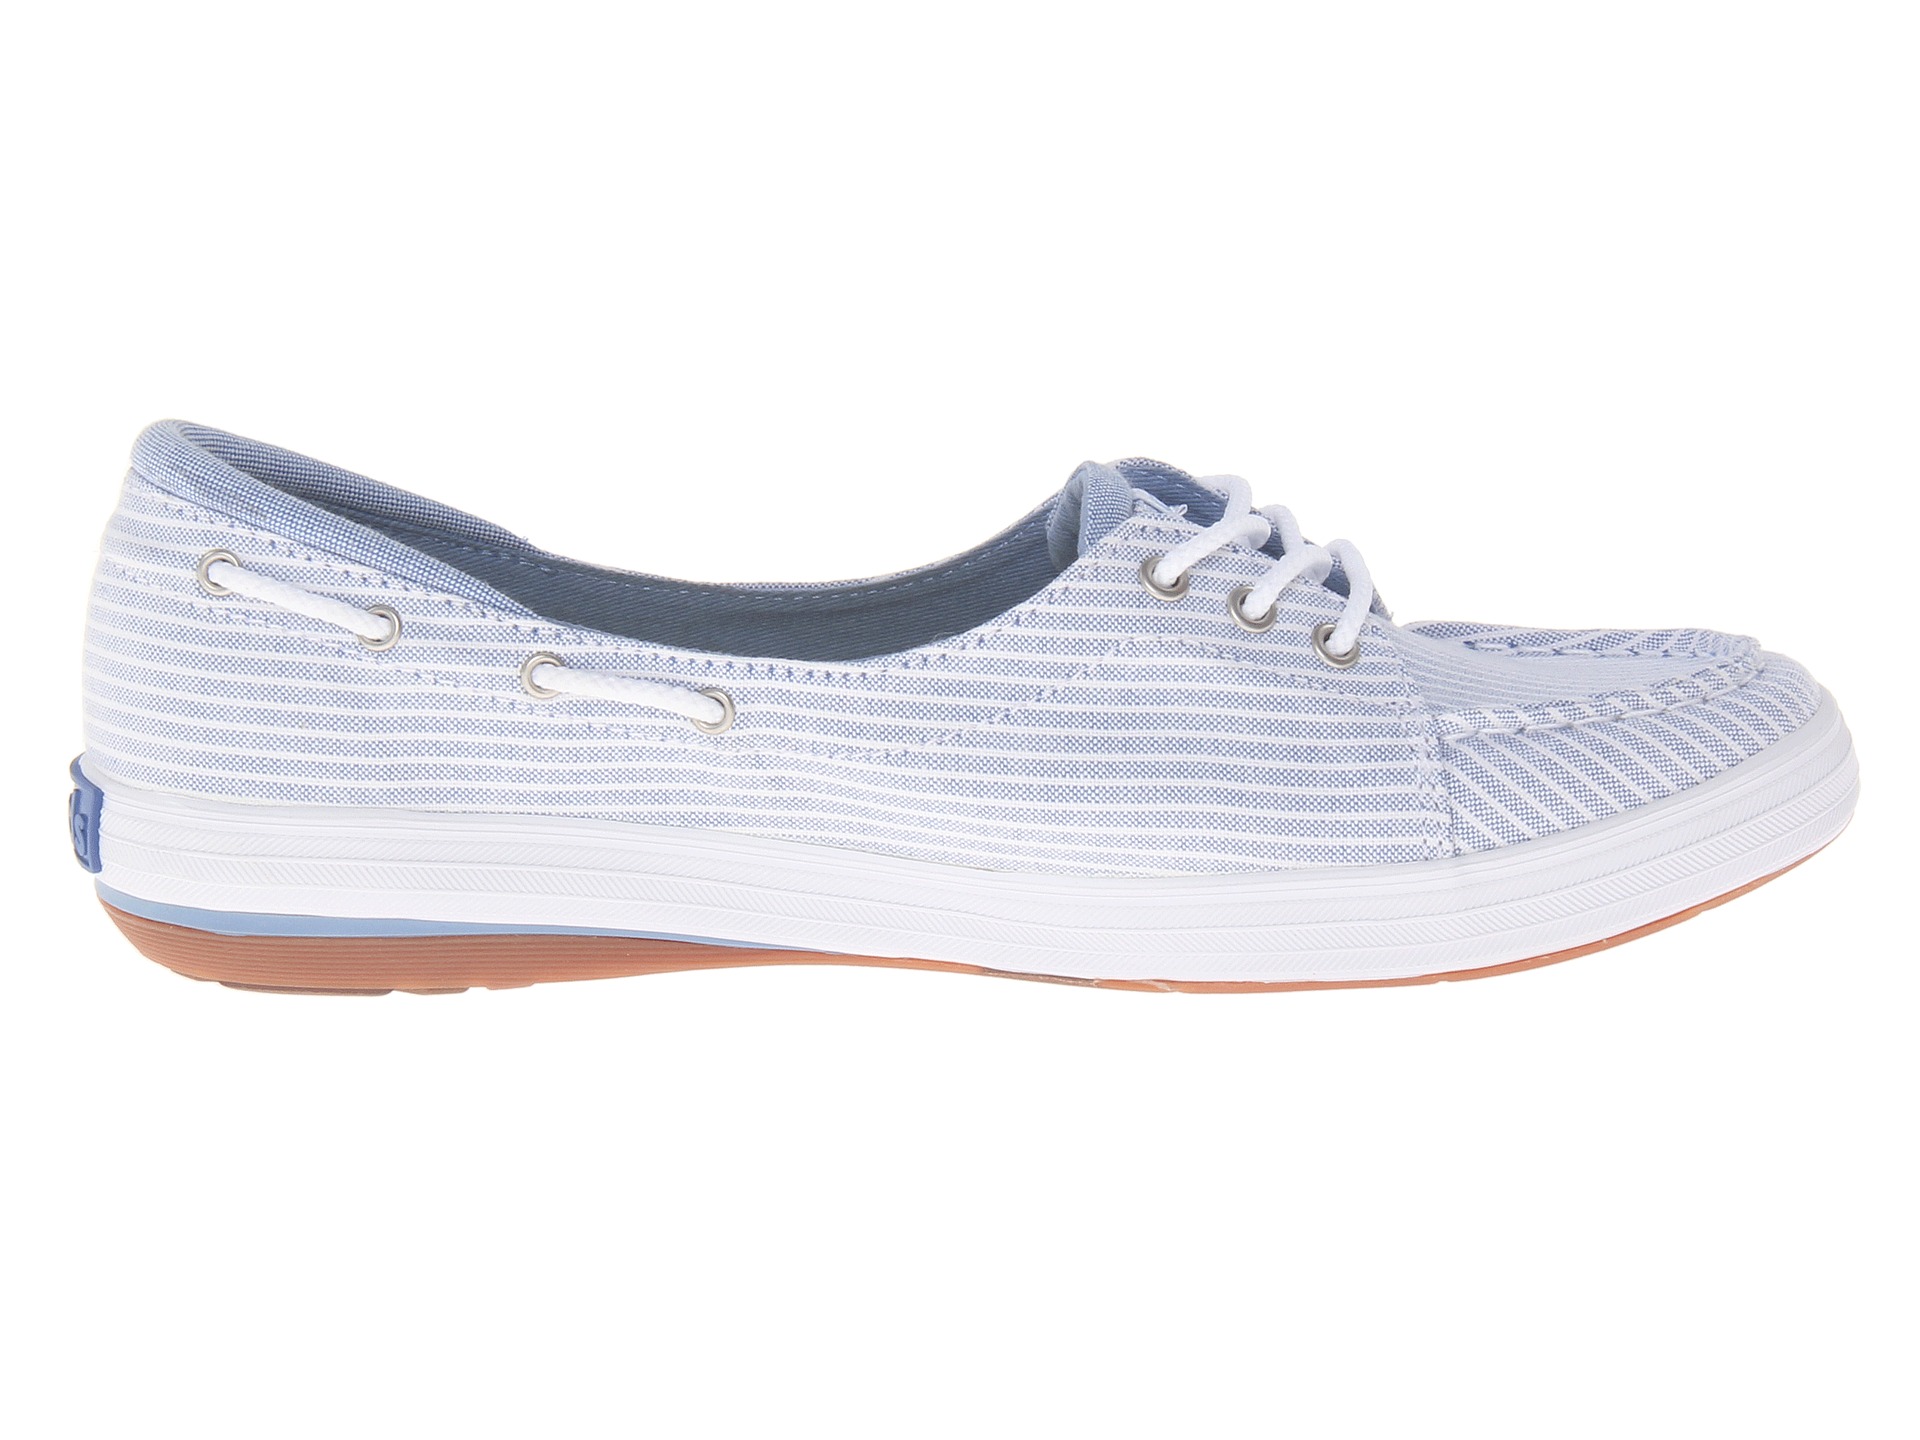 Keds Shine Boat Shoe, Shoes, Women | Shipped Free at Zappos